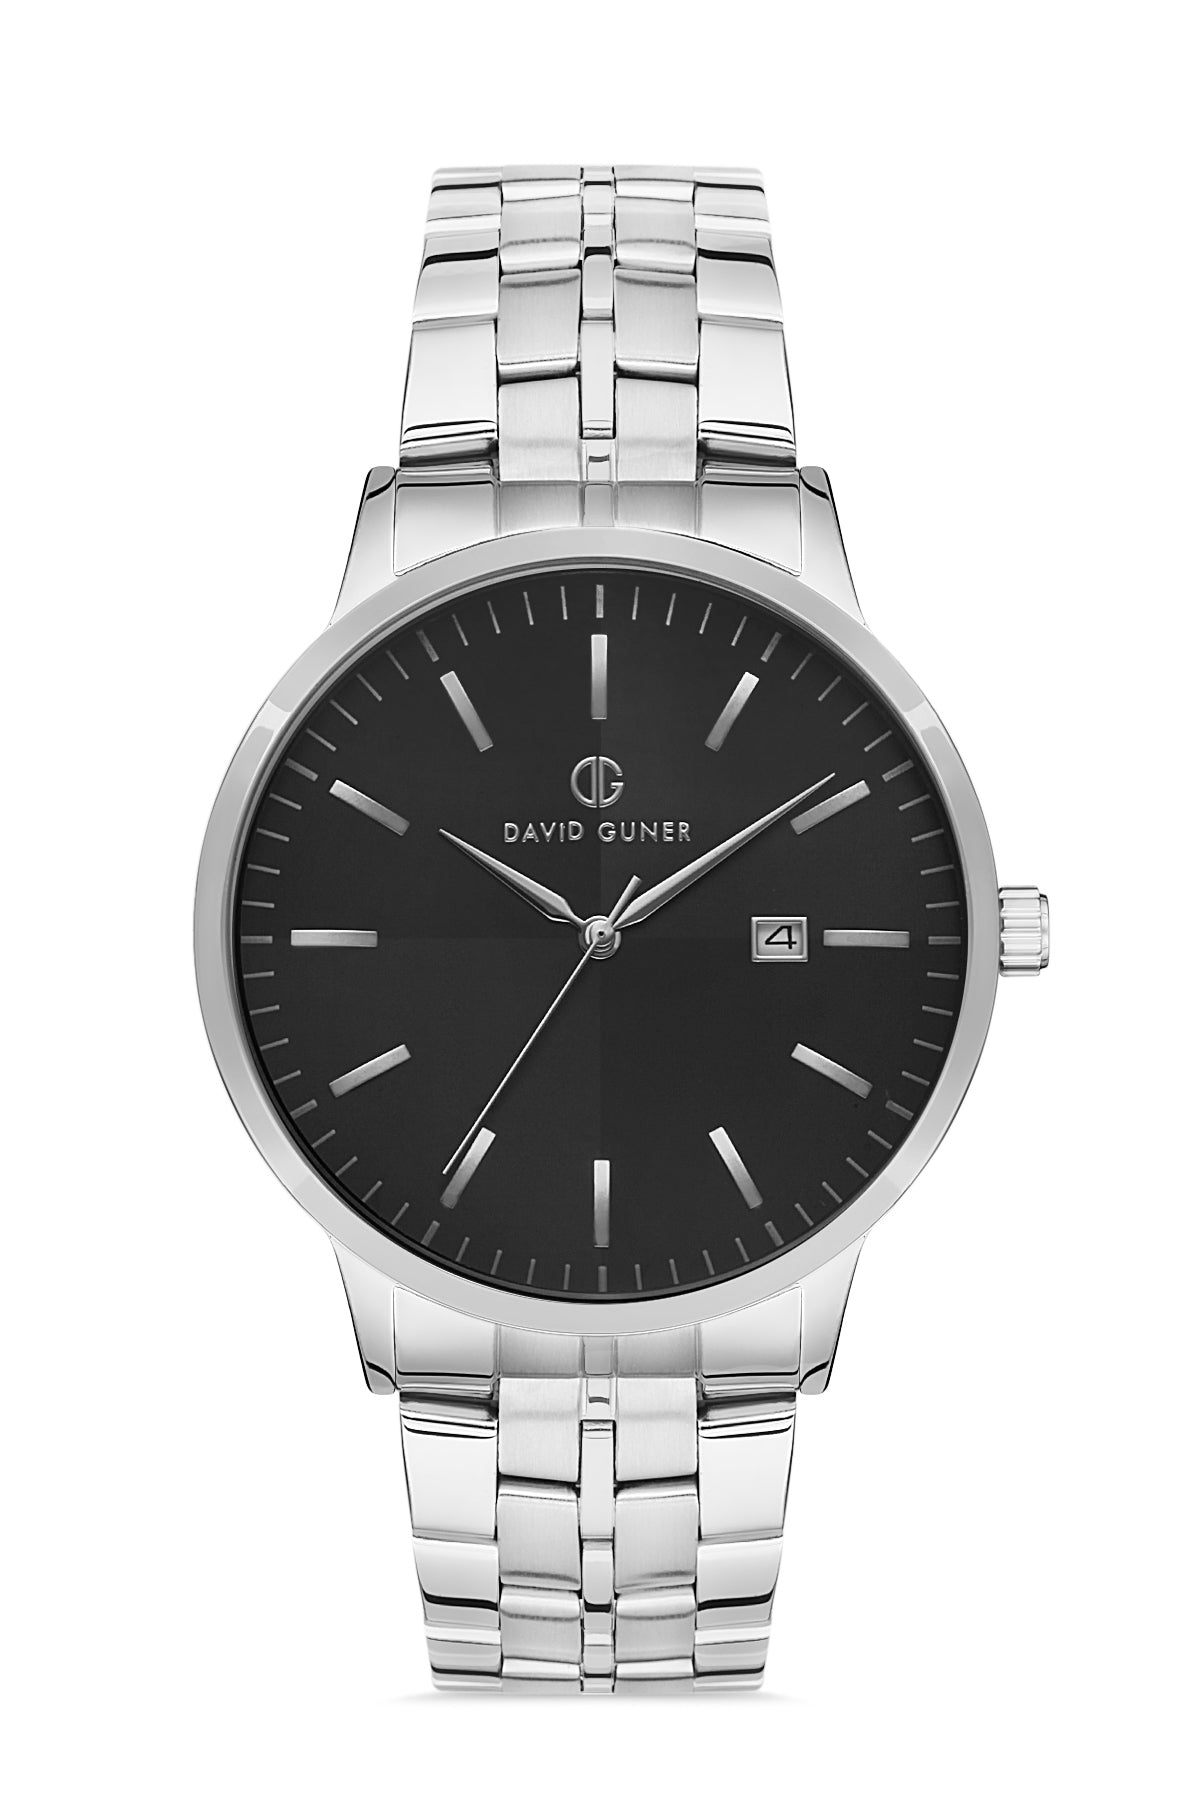 DAVID GUNER Silver Plated Black Dial Calendar Men's Wristwatch 